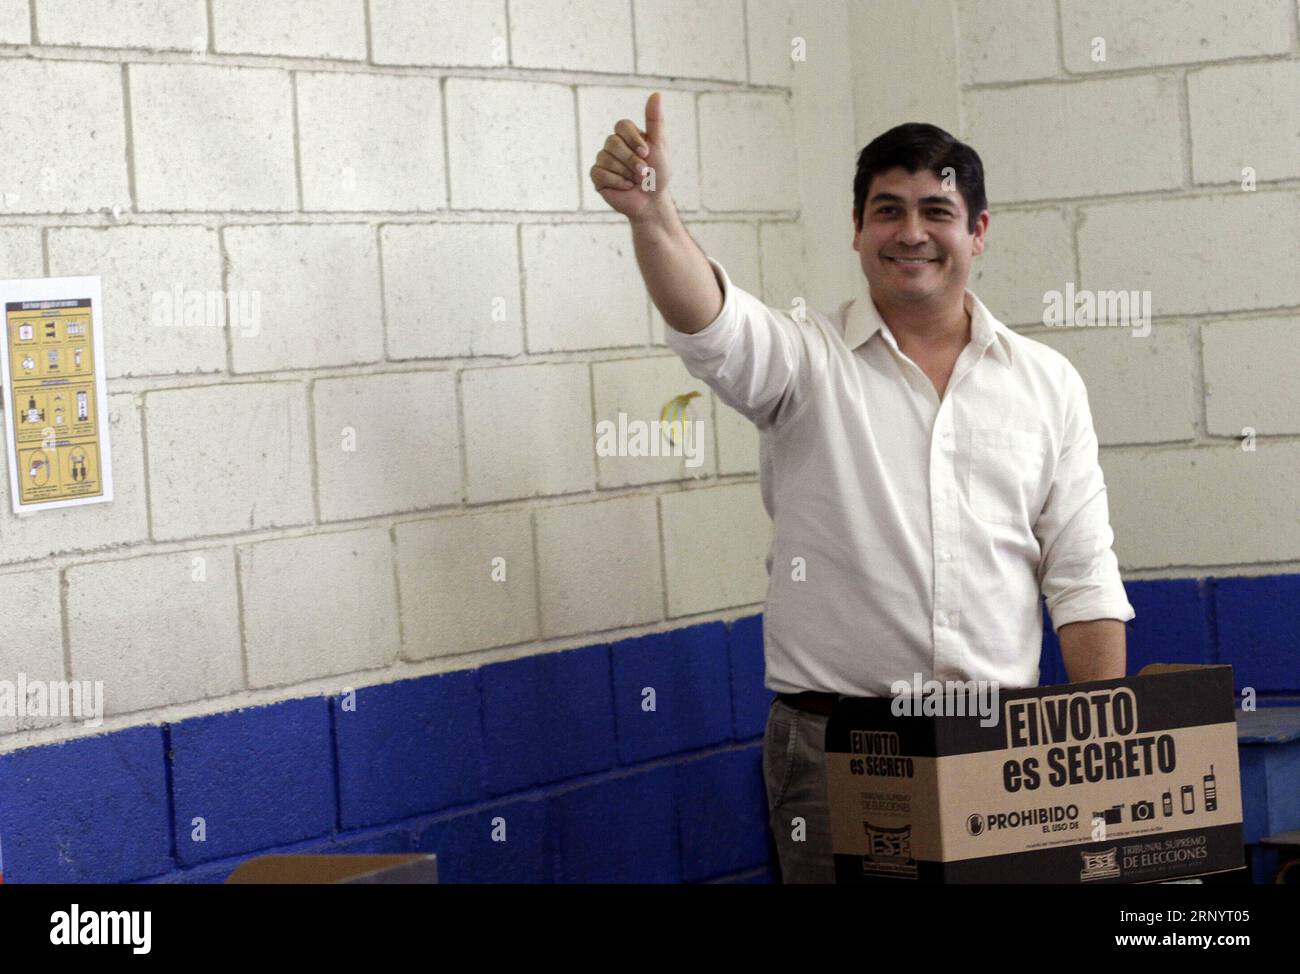 (180401) -- SAN JOSE, 1. April 2018 -- der Costa-ricanische Präsidentschaftskandidat Carlos Alvarado von der Citizen Action Party (PAC) gibt seine Stimme am 1. April 2018 in einer Wahllokale in San Jose, Costa Rica, ab. Rund 3,3 Millionen Costa-Ricaner werden am Sonntag aufgefordert, für ihren 44. Präsidenten zu stimmen, wobei sie zwischen dem evangelischen Kandidaten der National Restoration Party (PRN), Fabricio Alvarado, und dem offiziellen Kandidaten der Citizen Action Party (PAC), Carlos Alvarado, wählen. COSTA RICA-SAN JOSE-PRÄSIDENTSCHAFTSWAHL KENTXGILBERT PUBLICATIONXNOTXINXCHN Stockfoto